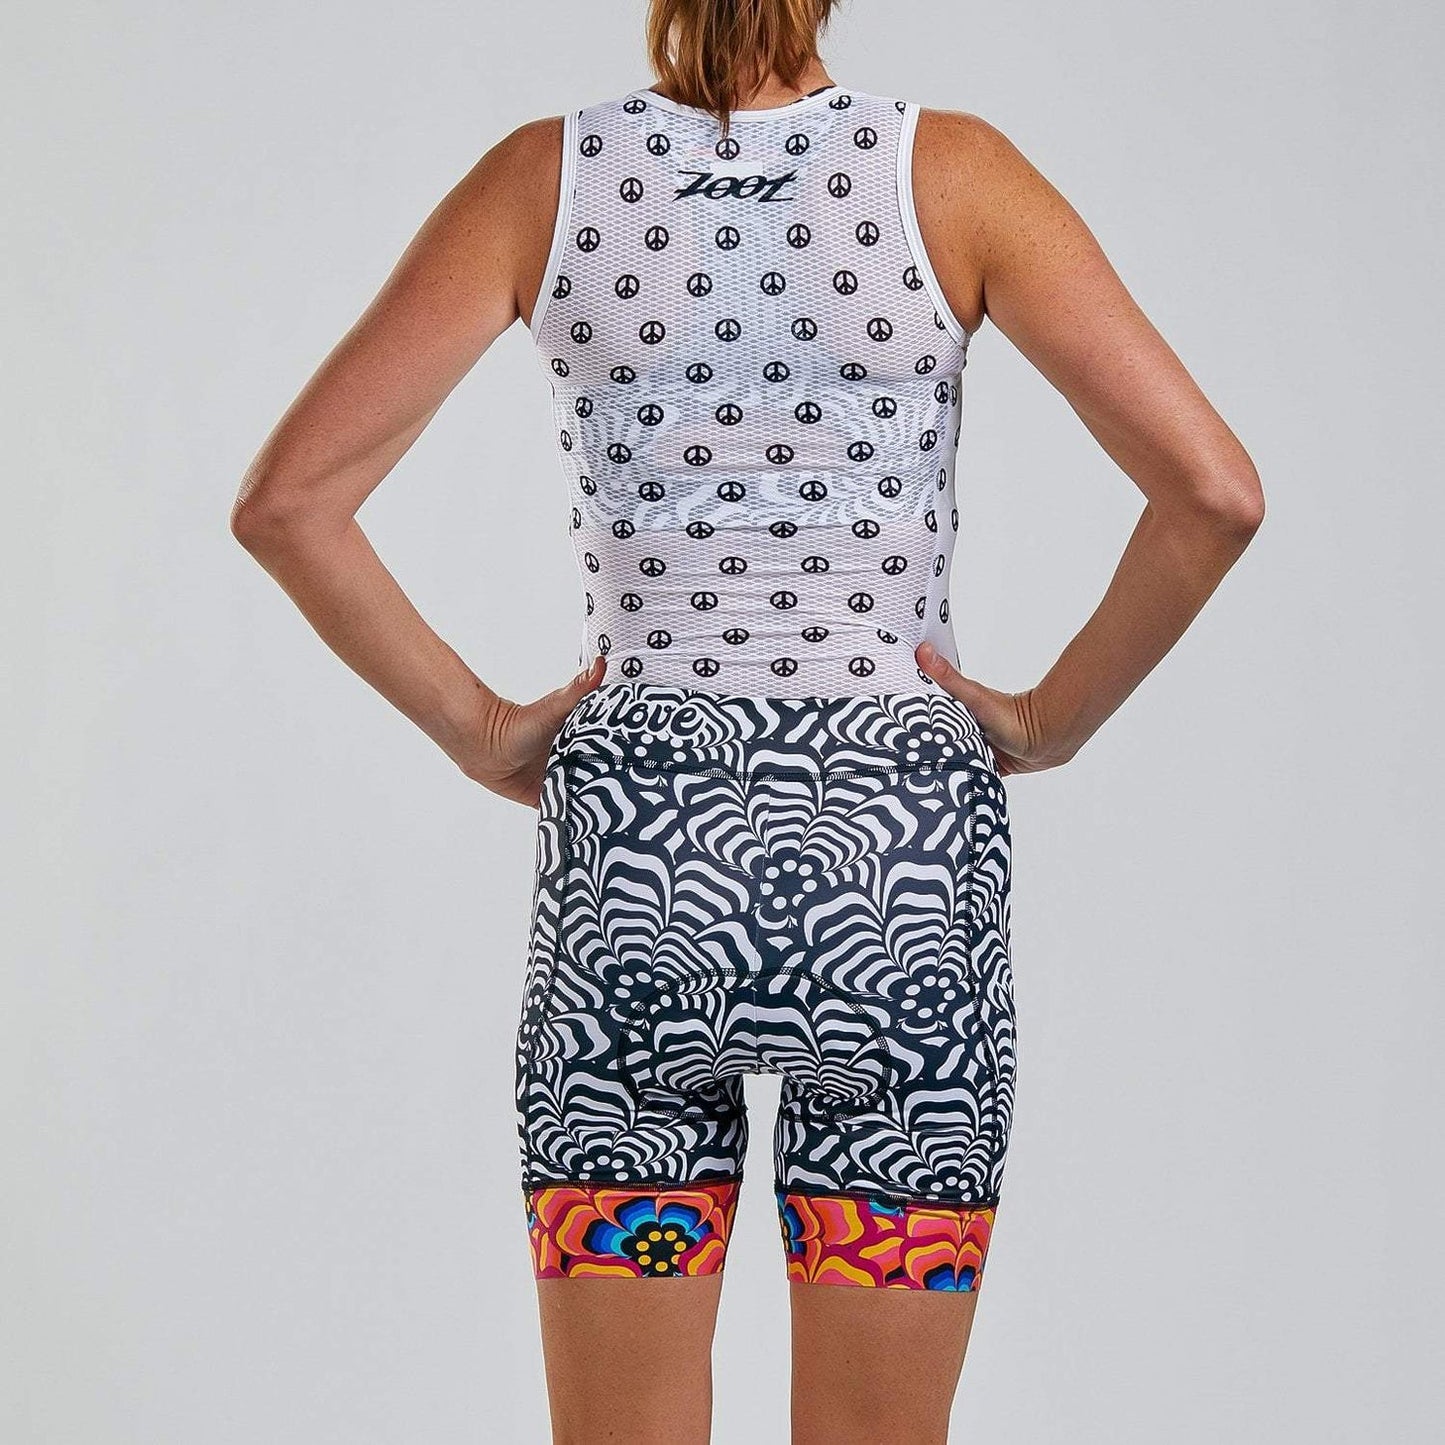 חולצת בסיס לרכיבה נשים ZOOT LTD CYCLE BASE LAYER TRI LOVE